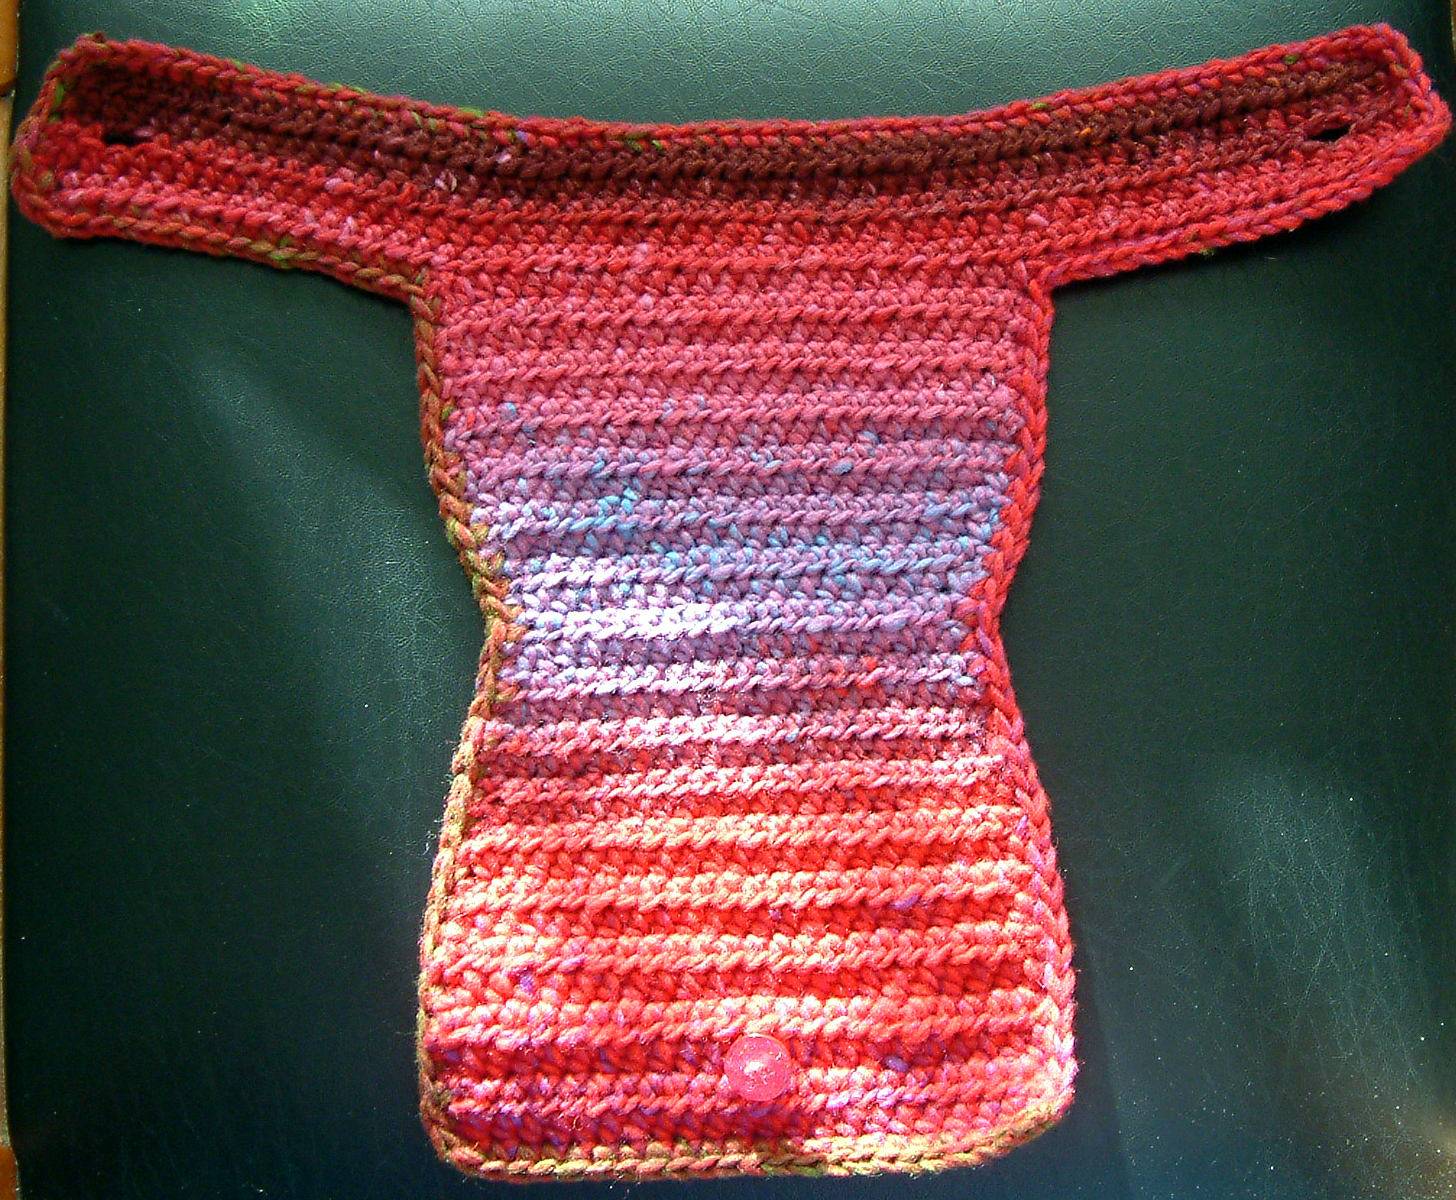 Baby crochet hanger pattern - Learn how to crochet